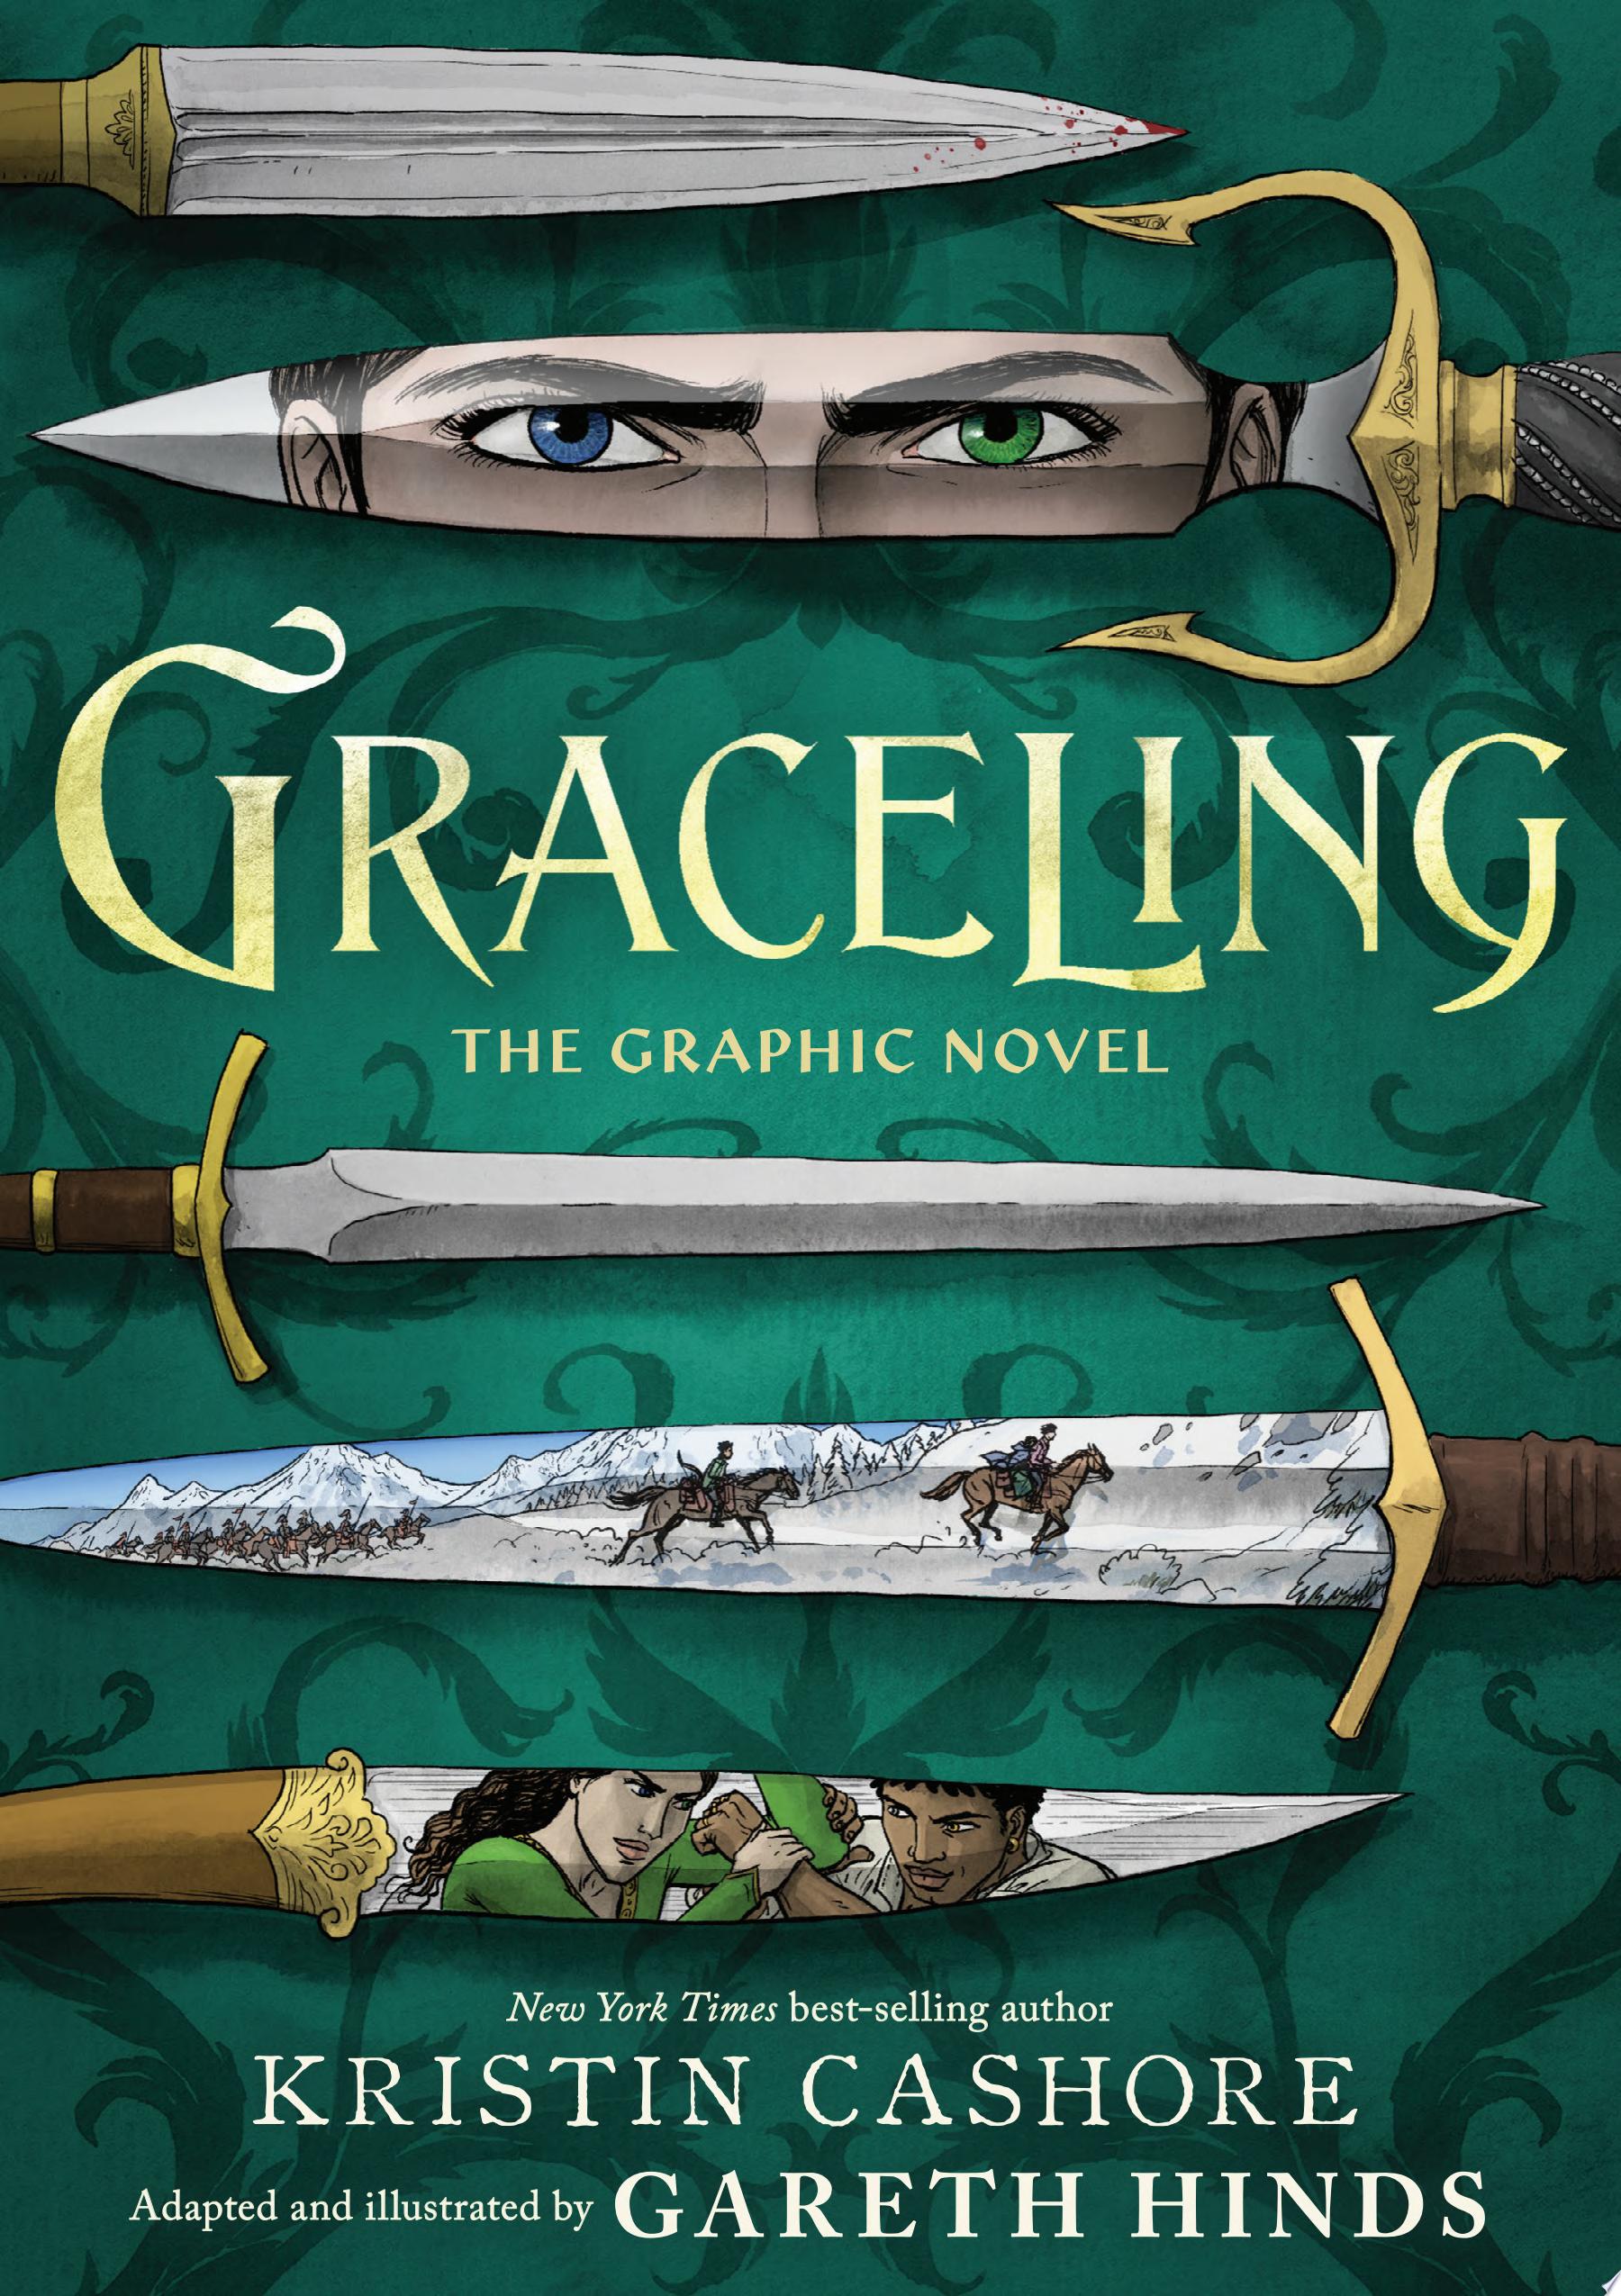 Image for "Graceling (Graphic Novel)"